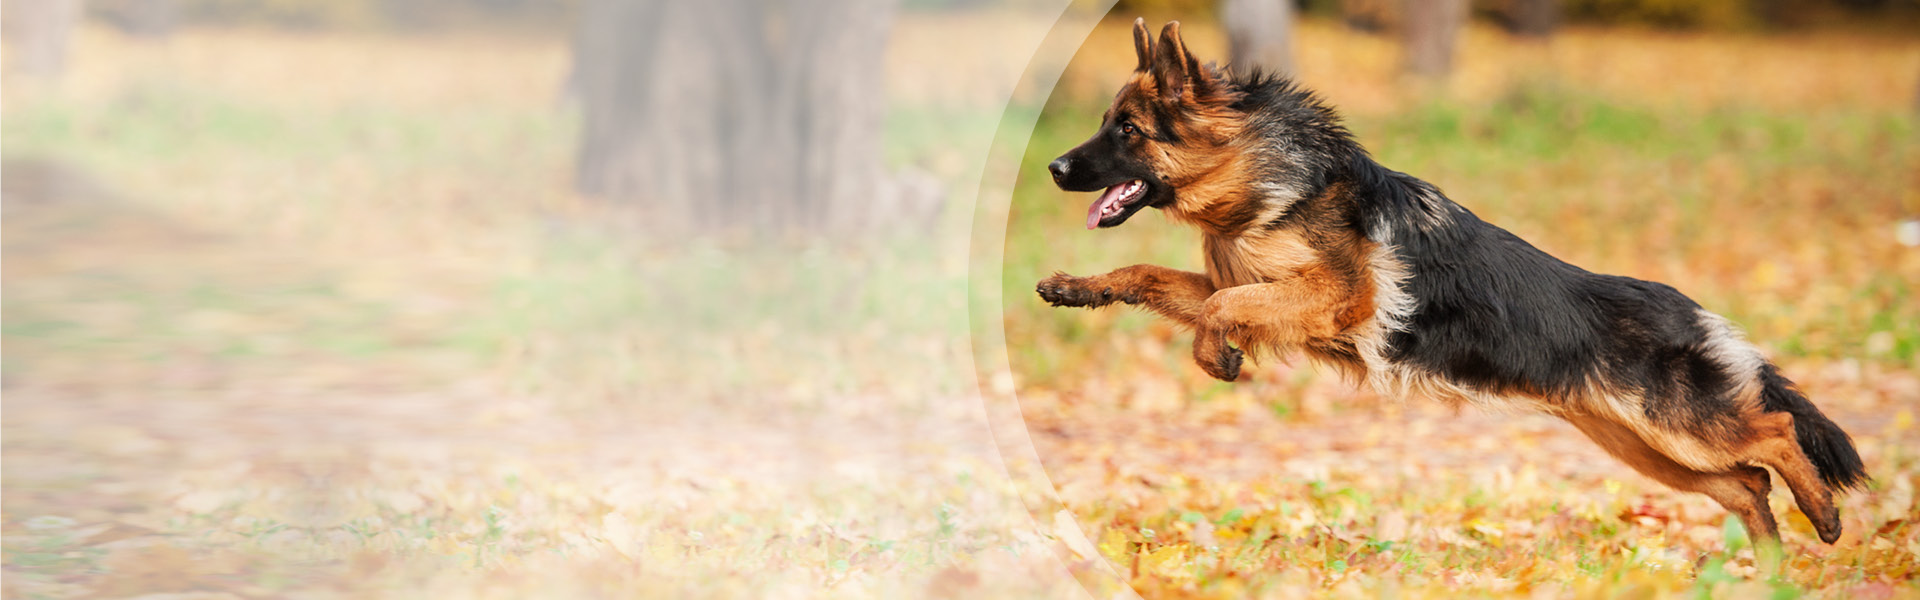 Zwyrodnienie stawów u psa – objawy i leczenie